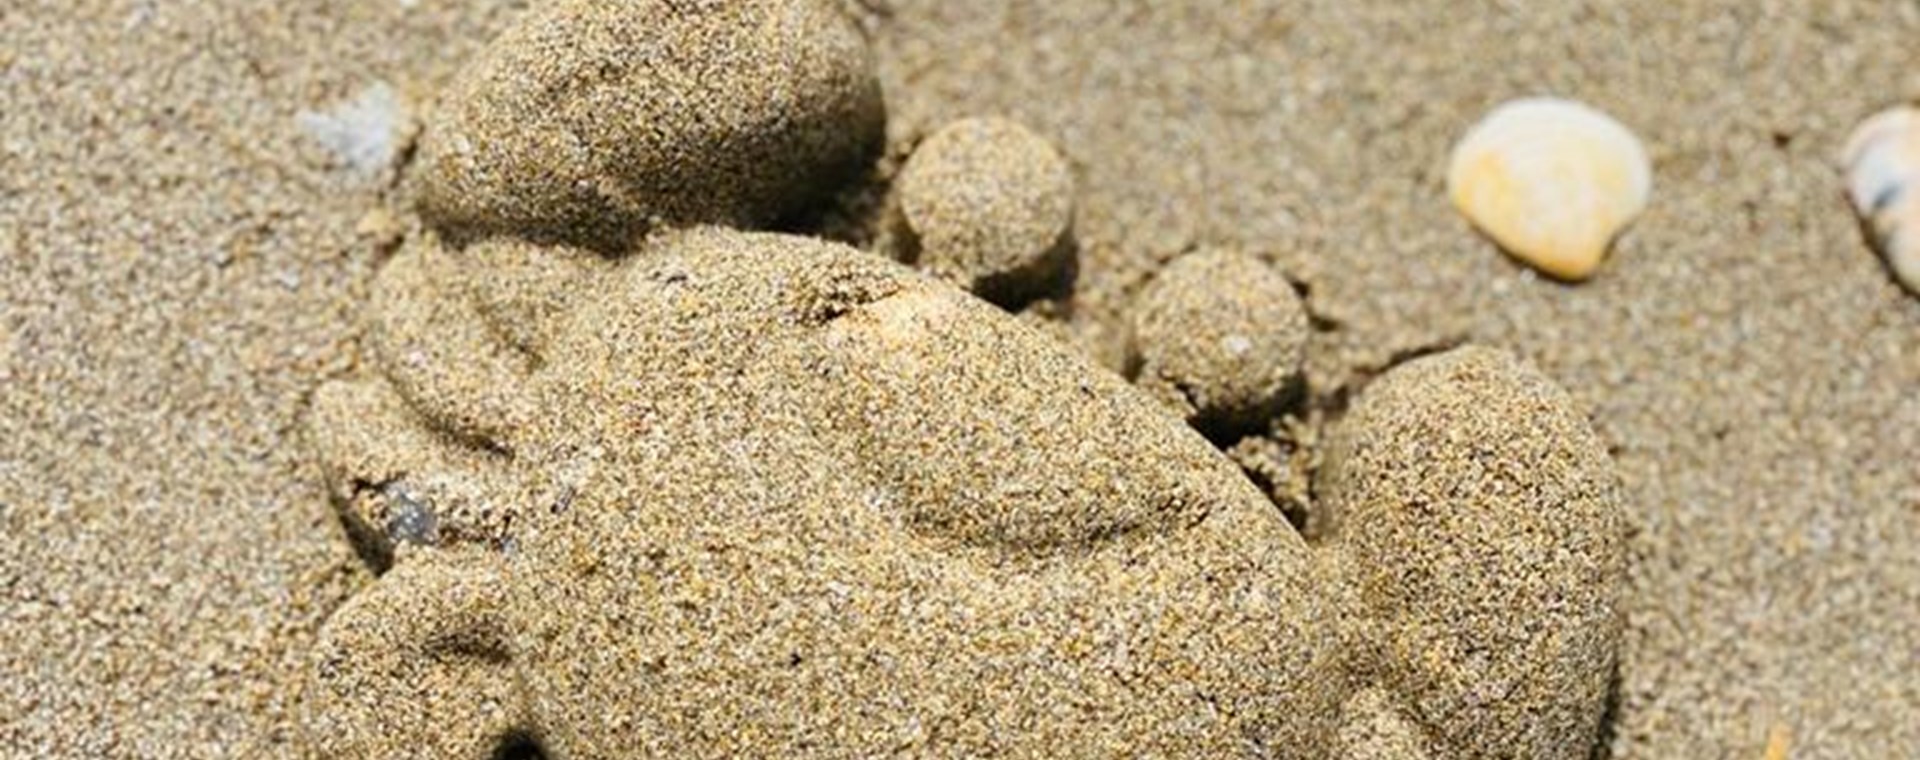 3 POSTO NADIA BERTI - Formine nella sabbia 